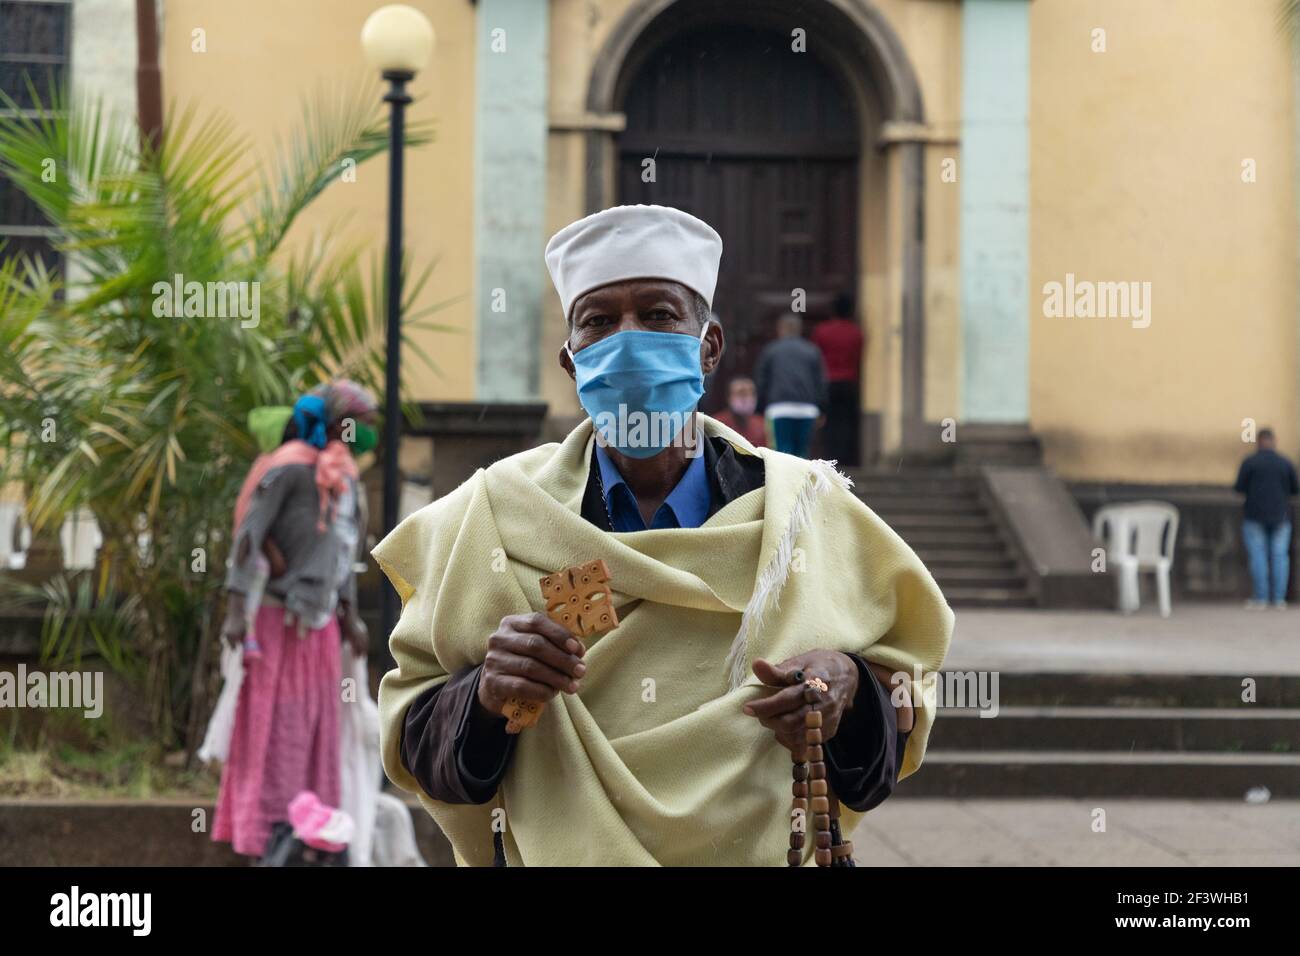 Addis Abeba / Etiopia - Giugno 14 2020: Etiope cristiano ortodosso Tewaheddo Chiesa sacerdote nella chiesa della Santa Trinità. Lavorare mentre si indossa una maschera. Foto Stock